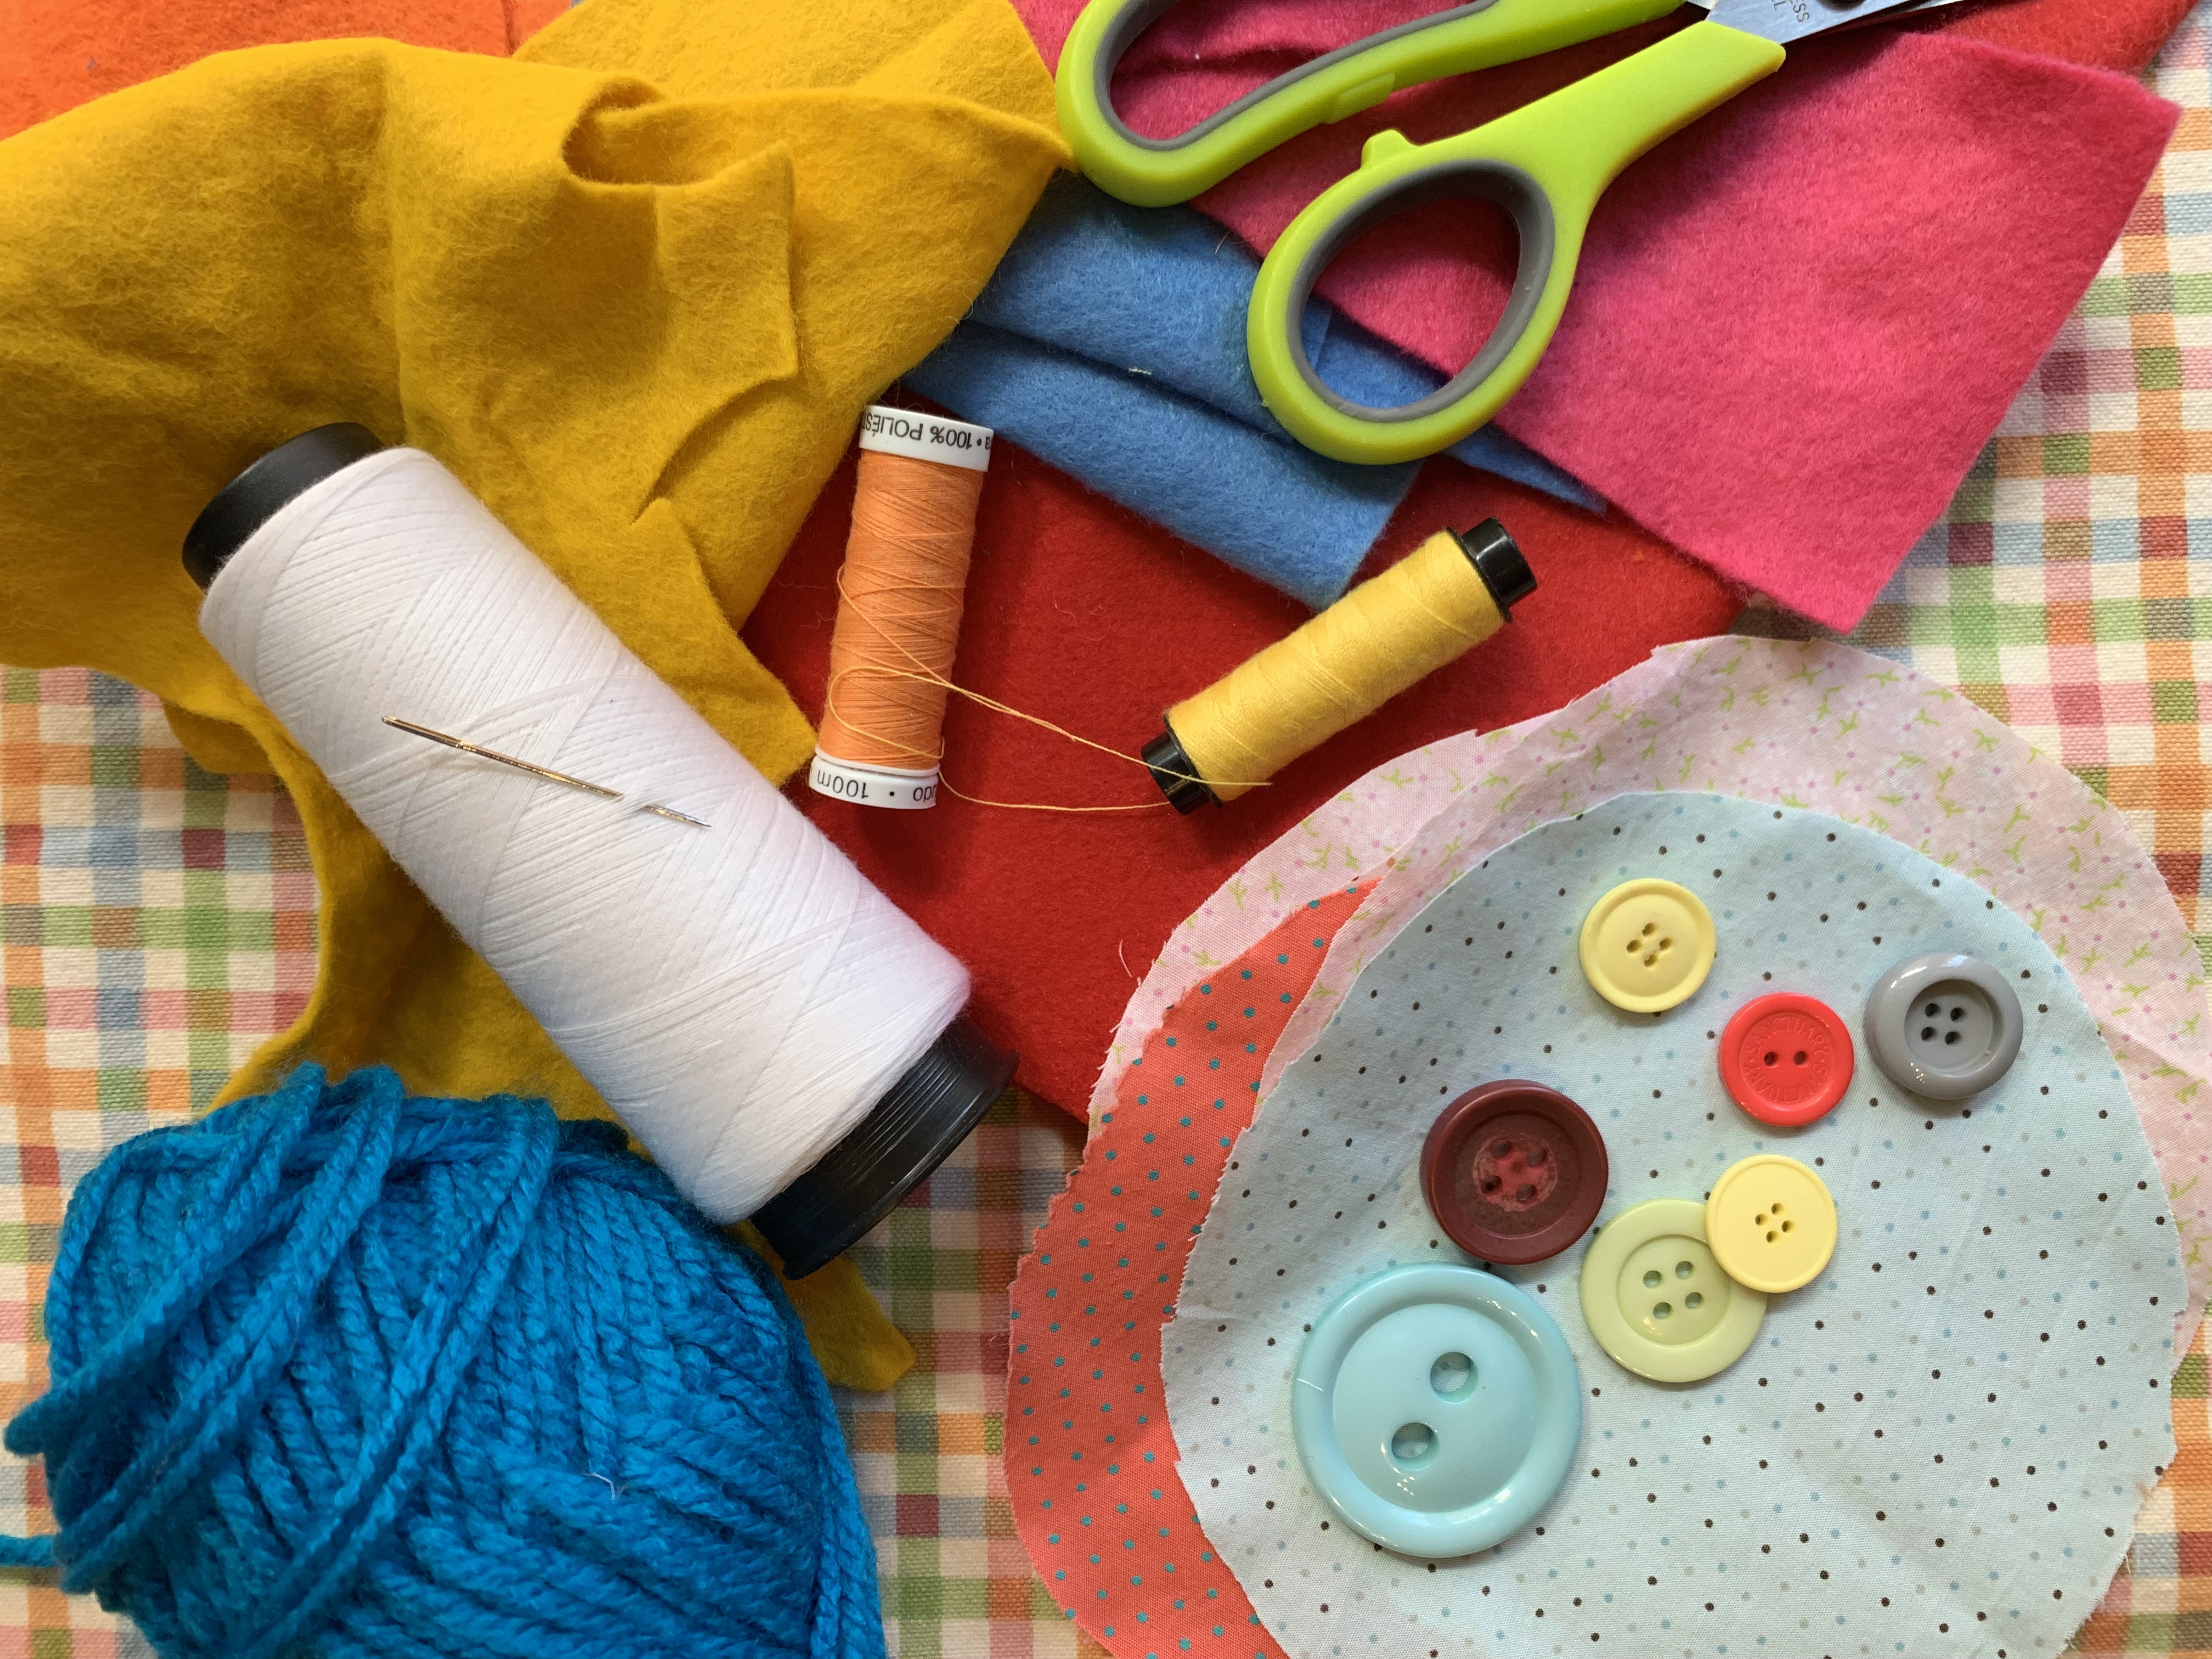 Sabato 25 Maggio Kids lab “CREATIVITA’ A MILLE” – The Fabric Tale e Atelier SottoSopra